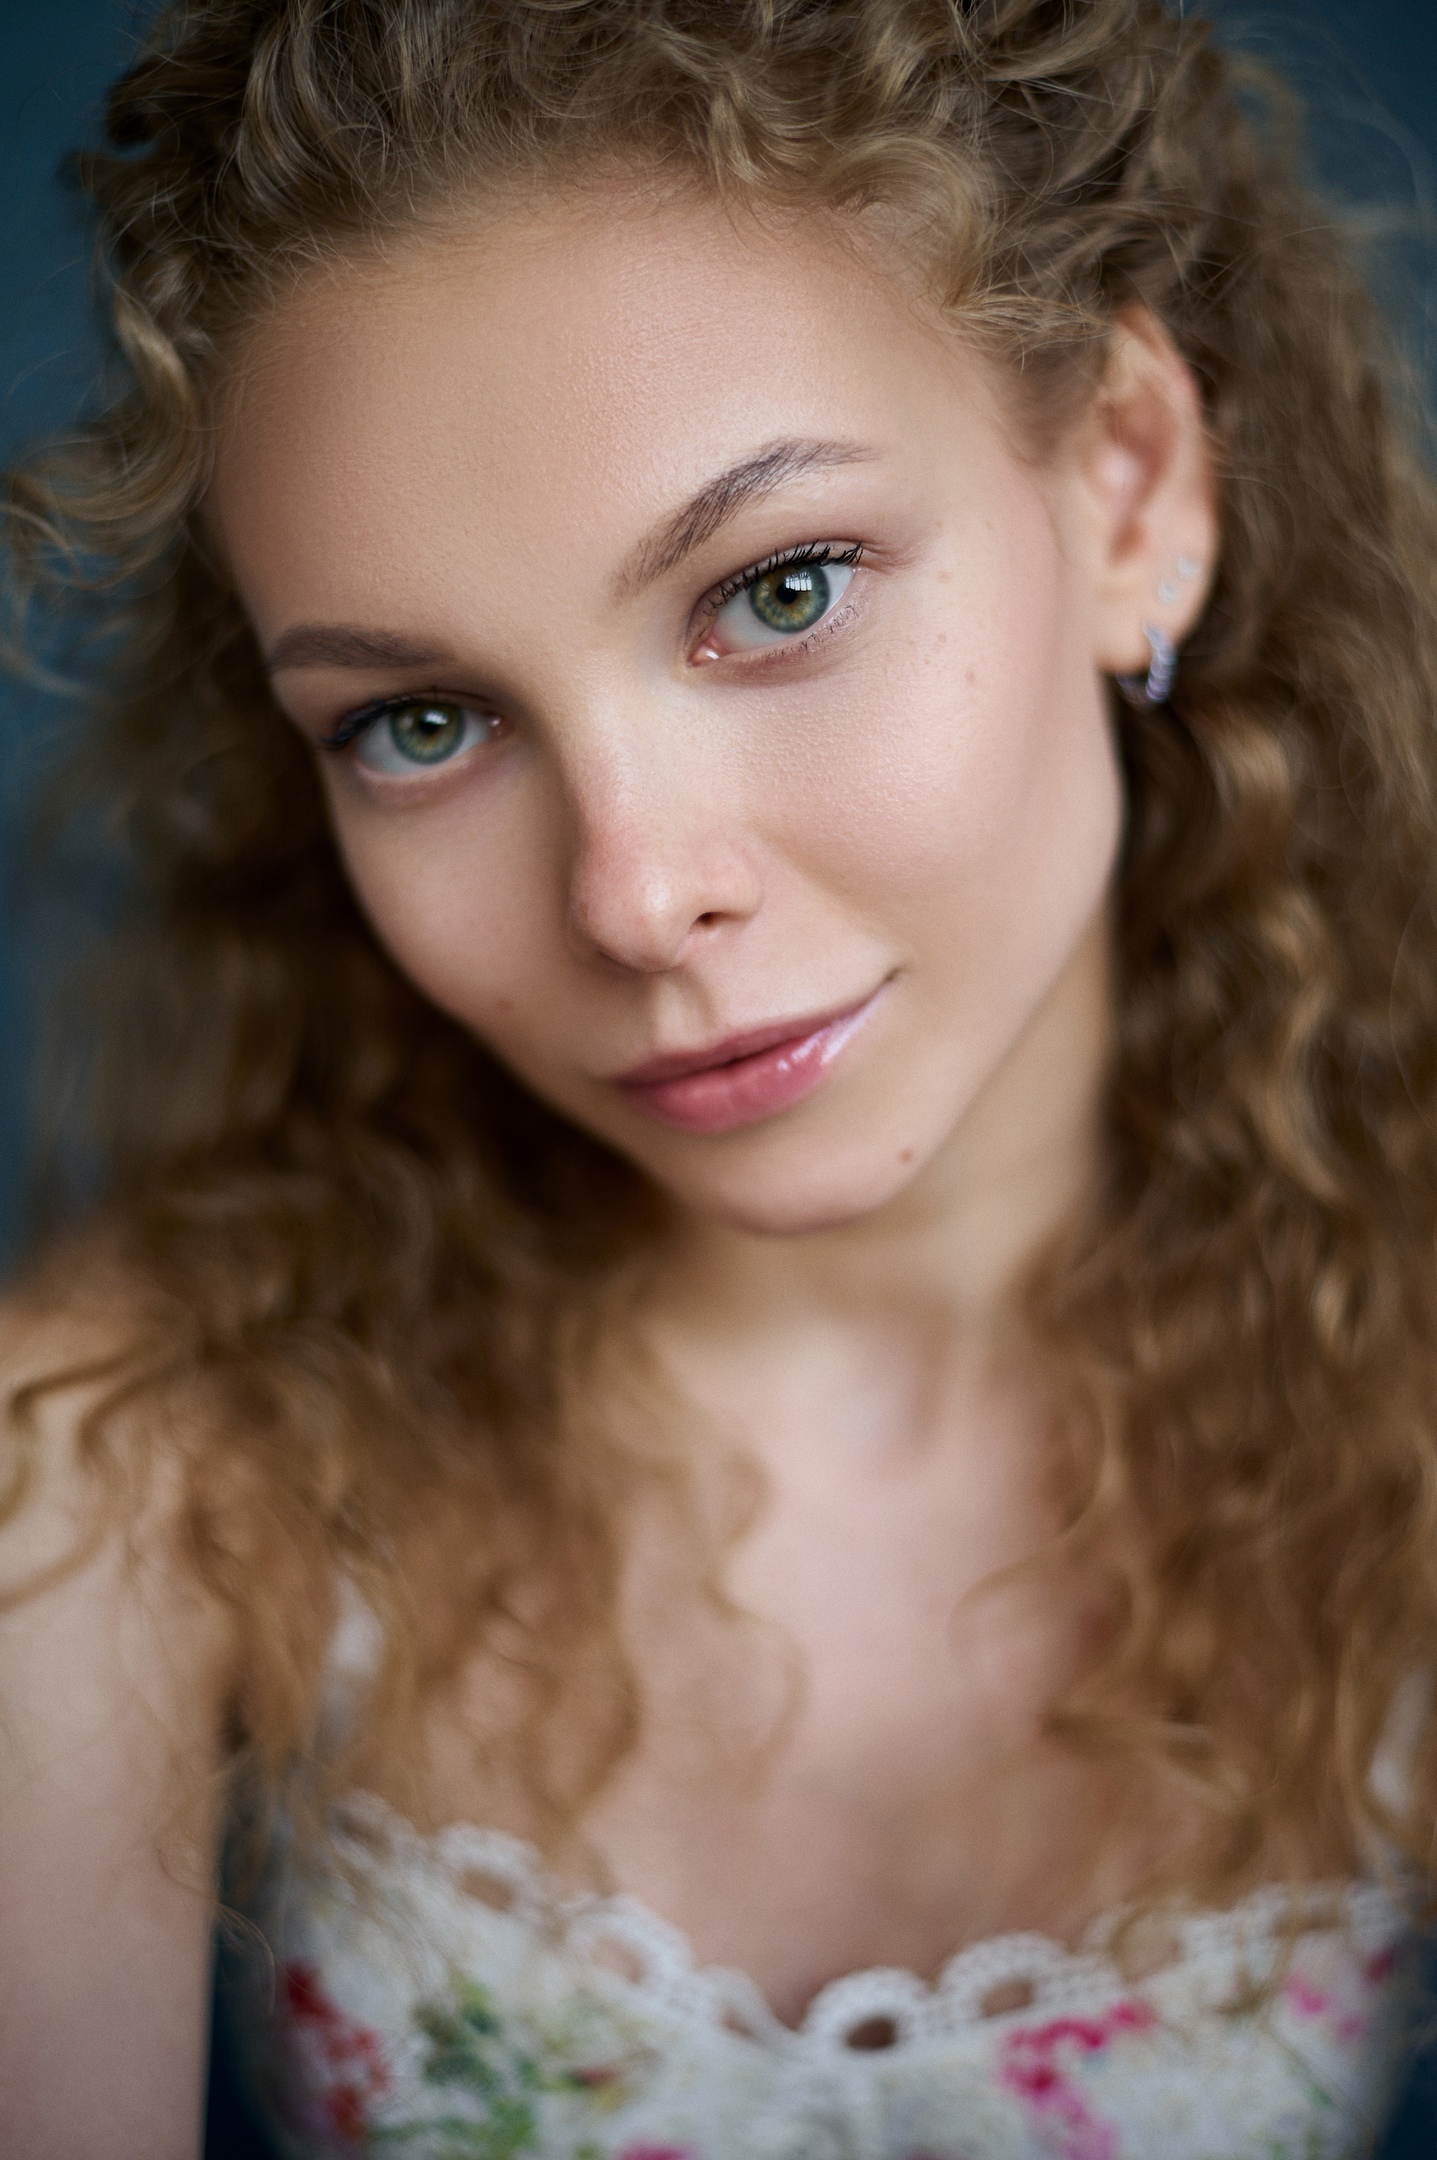 Max Pyzhik Women Portrait Curly Hair Green Eyes Head Tilt Elena Mayorova Closeup Portrait Display 1437x2160